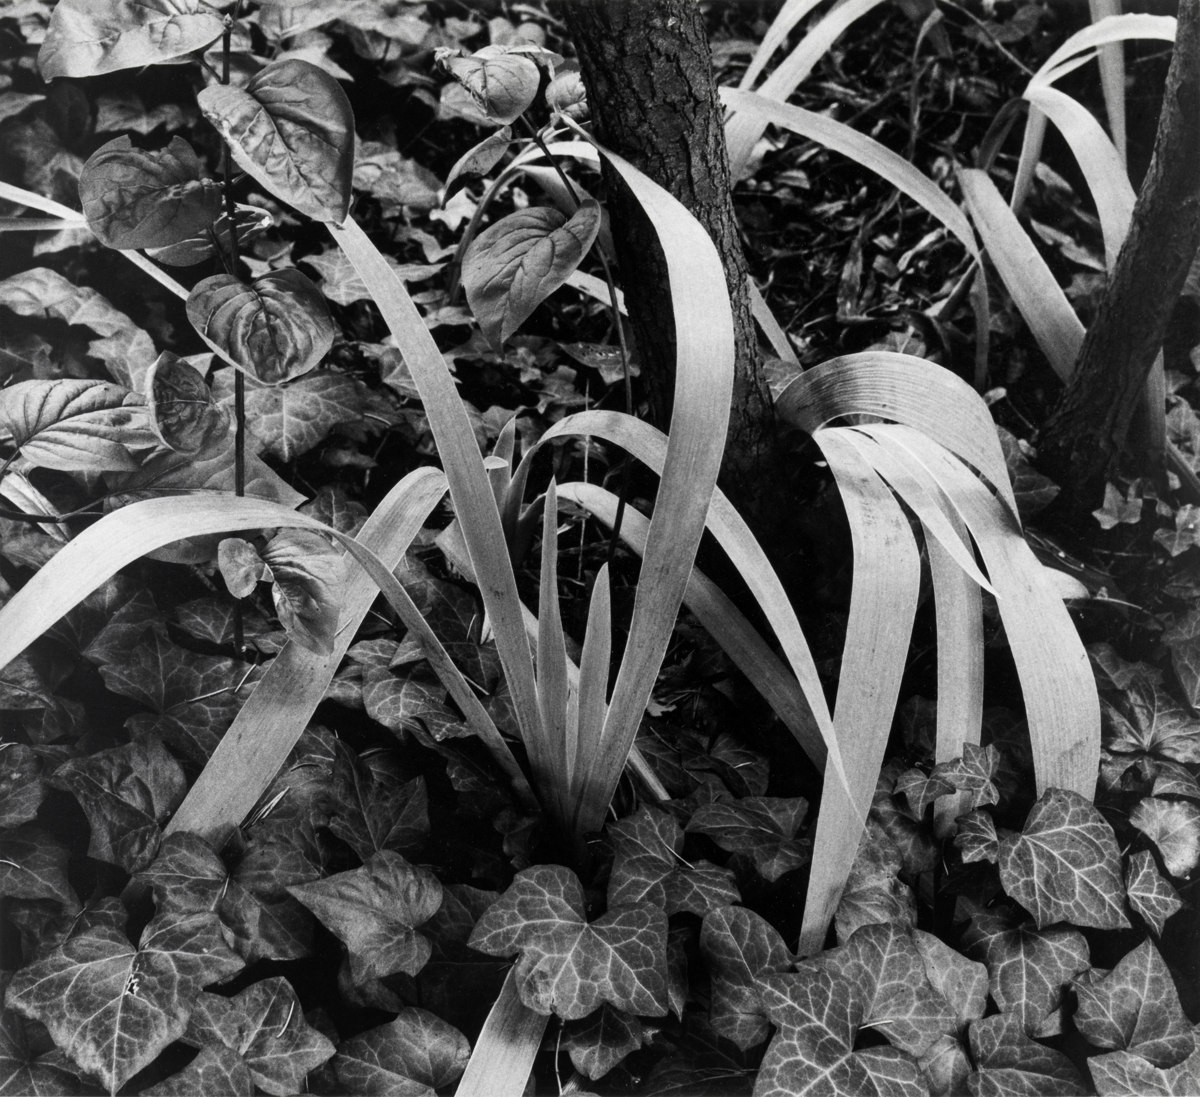 Iris and Stump, The Garden, Orgeval [Lirios y tocón, El jardín, Orgeval, Francia] © Aperture Foundation, Inc., Paul Strand Archive © COLECCIONES Fundación MAPFRE